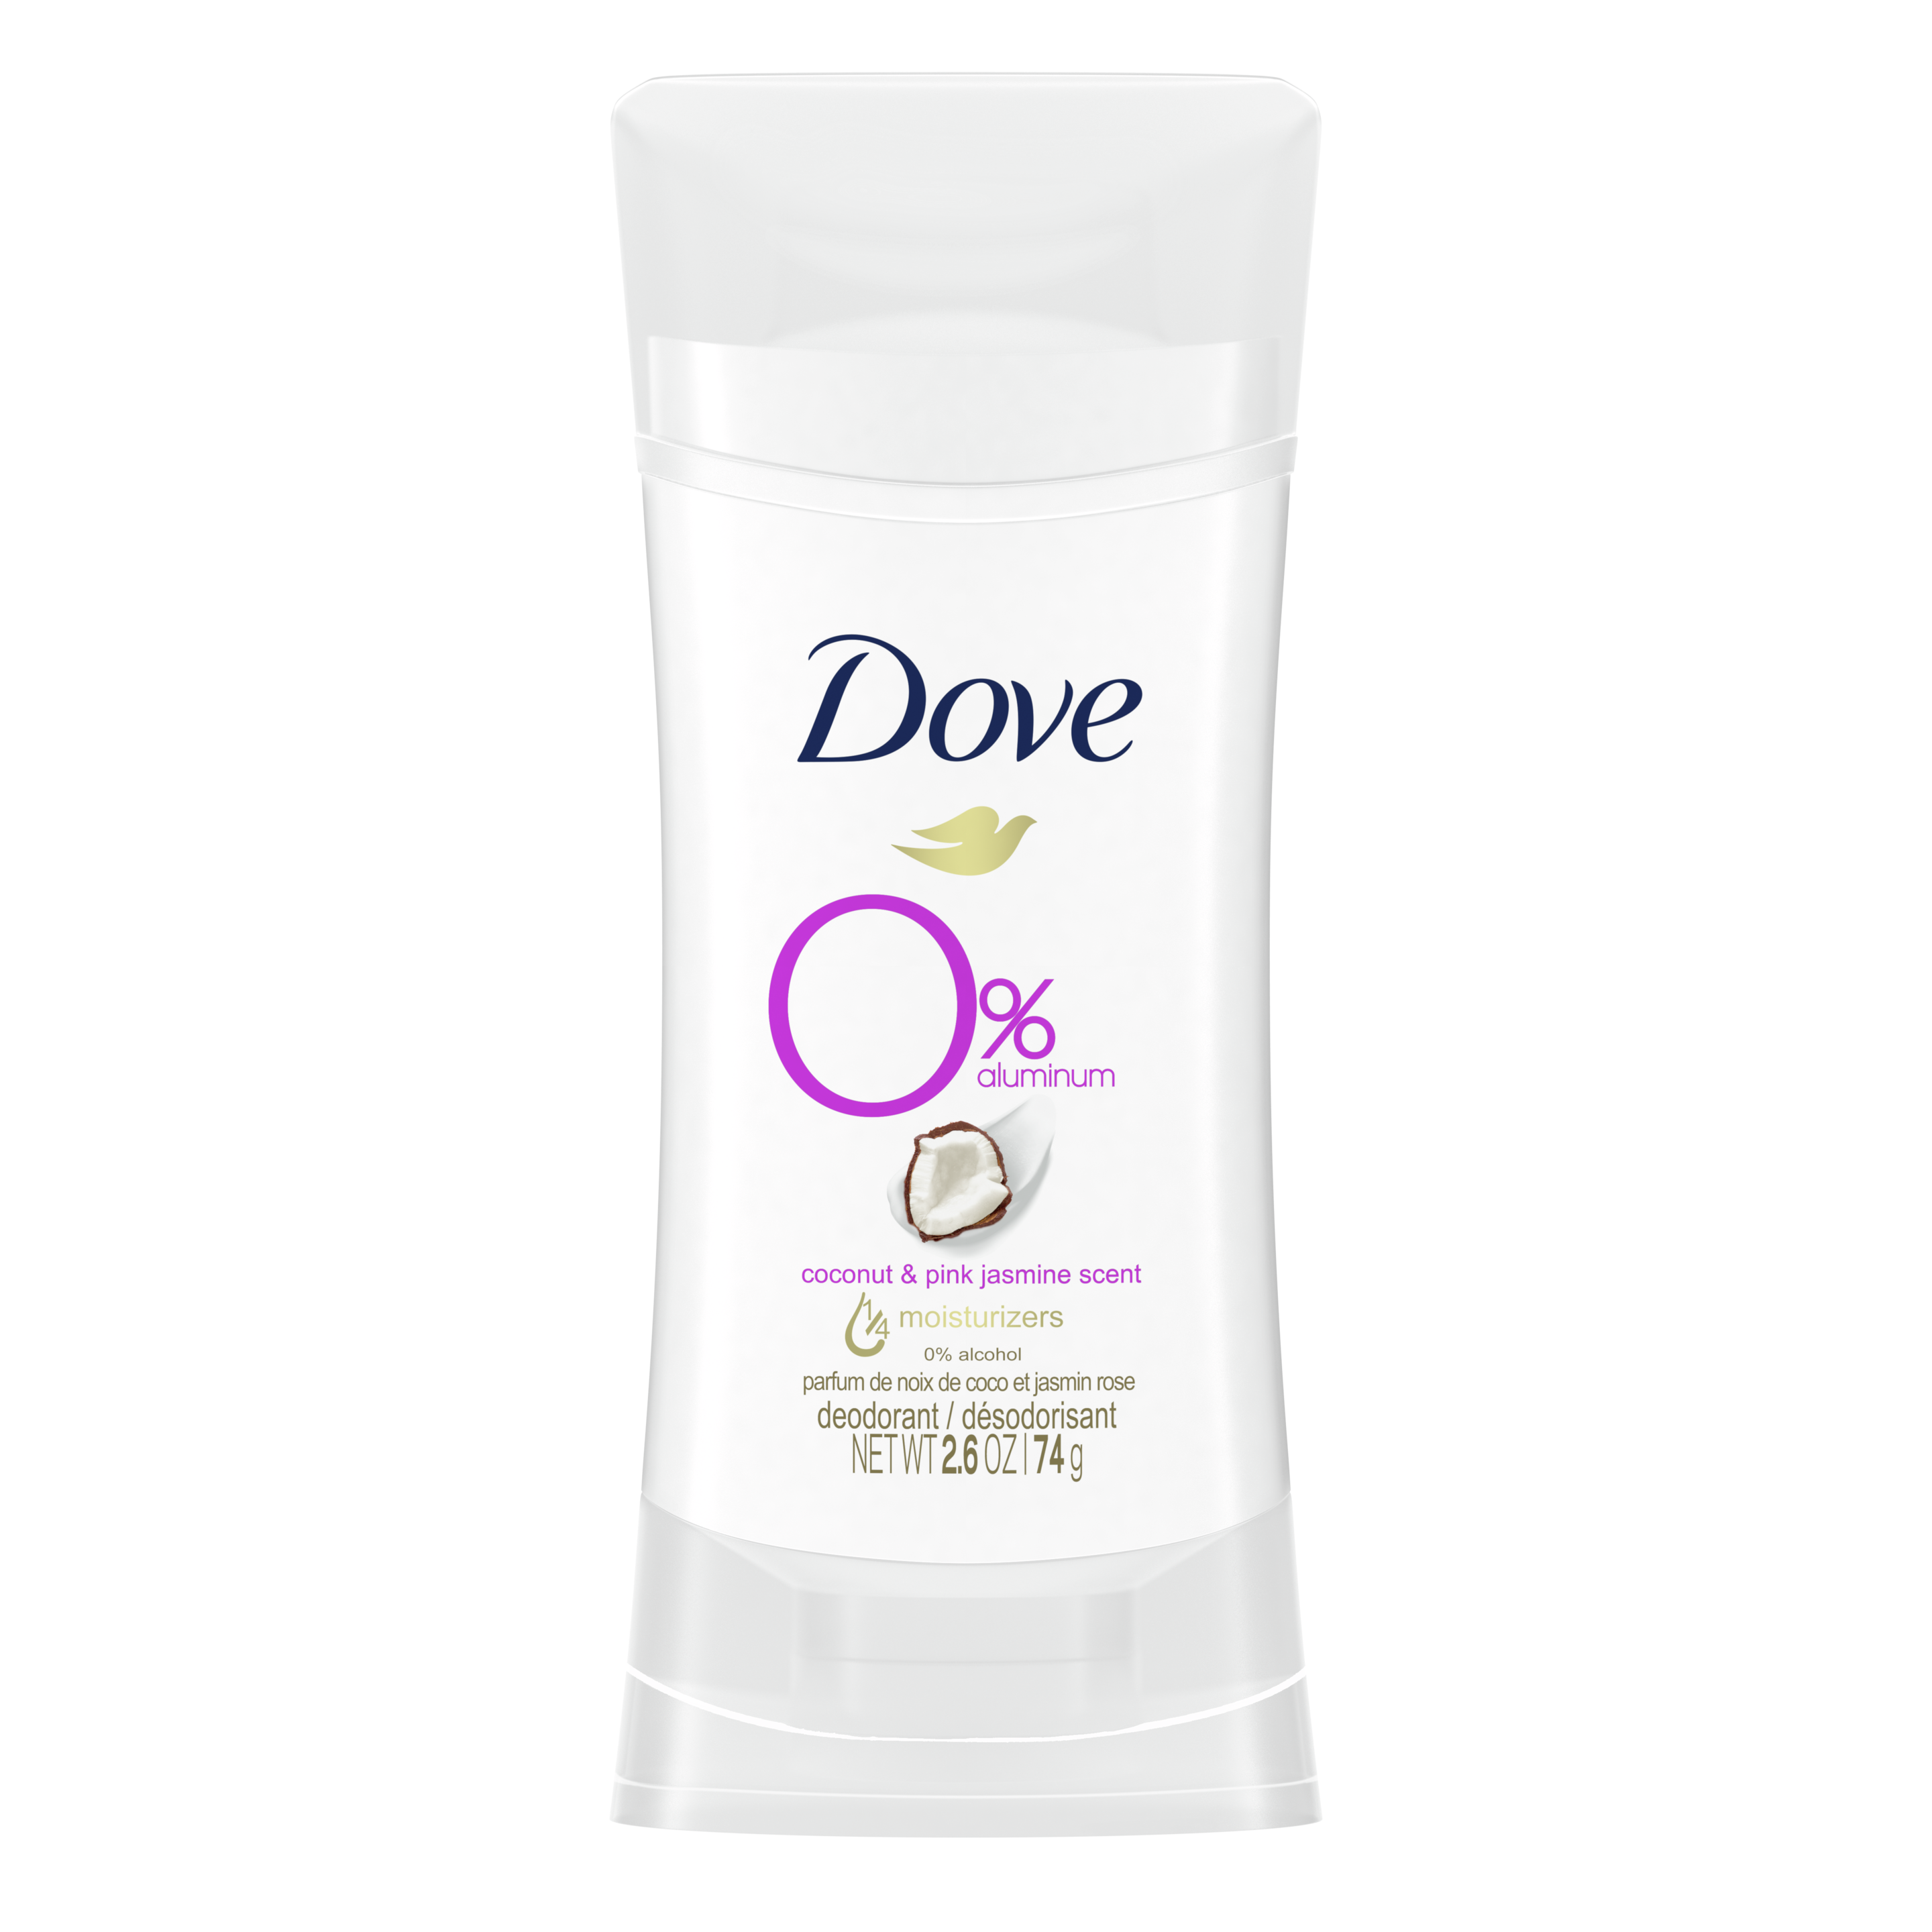 Dove 0% Aluminum Deodorant Coconut & Pink Jasmine 2.6oz